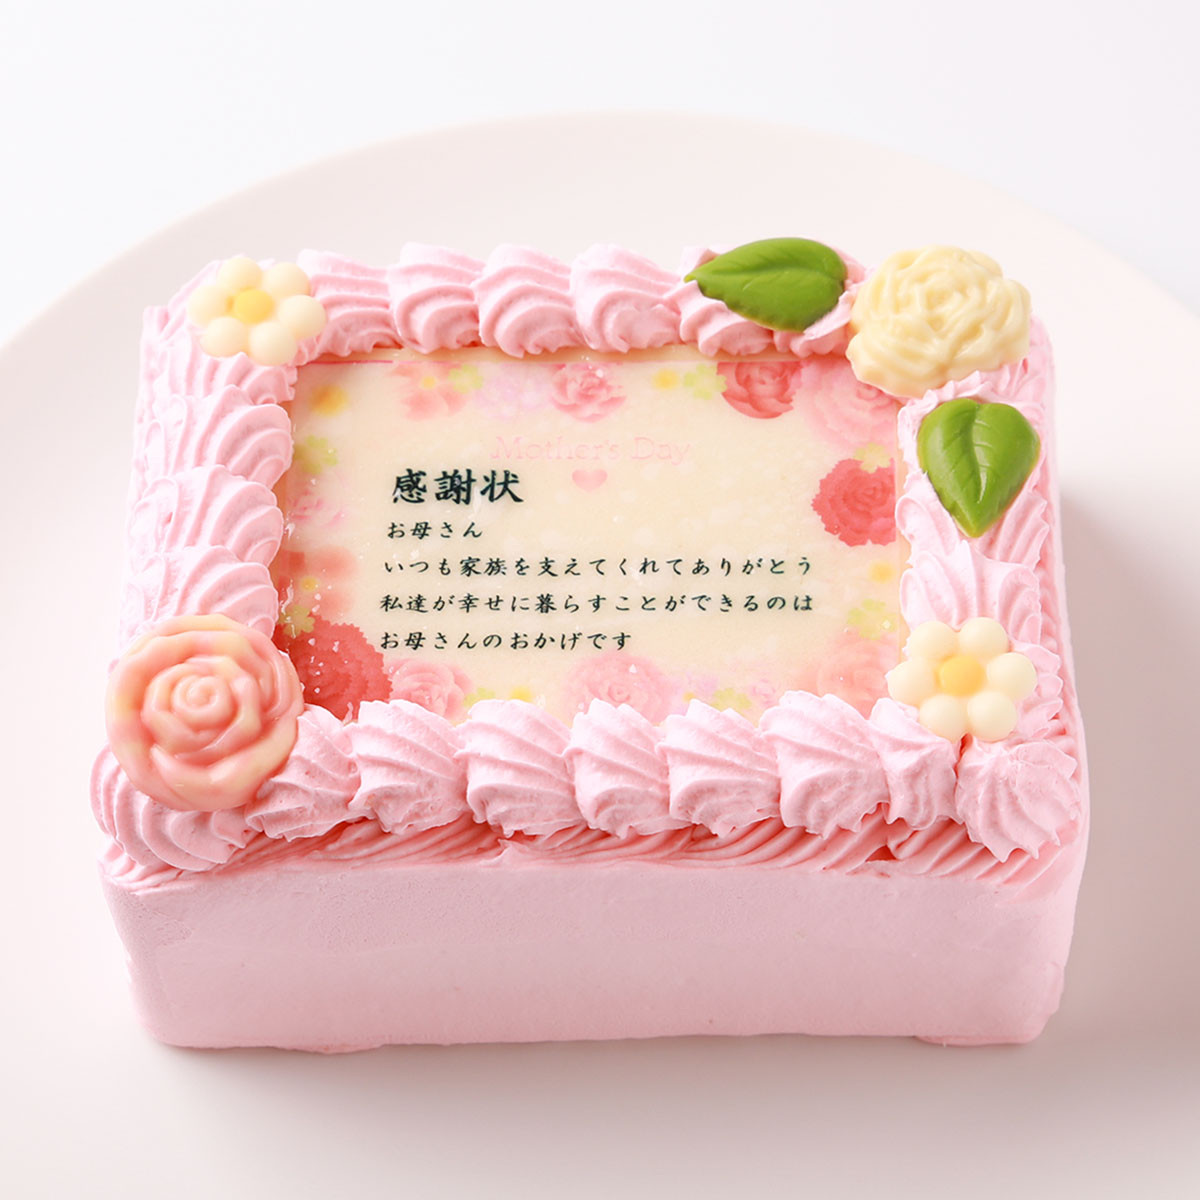 母の日限定感謝状ケーキ 12×9cm苺風味のピンク生クリーム 